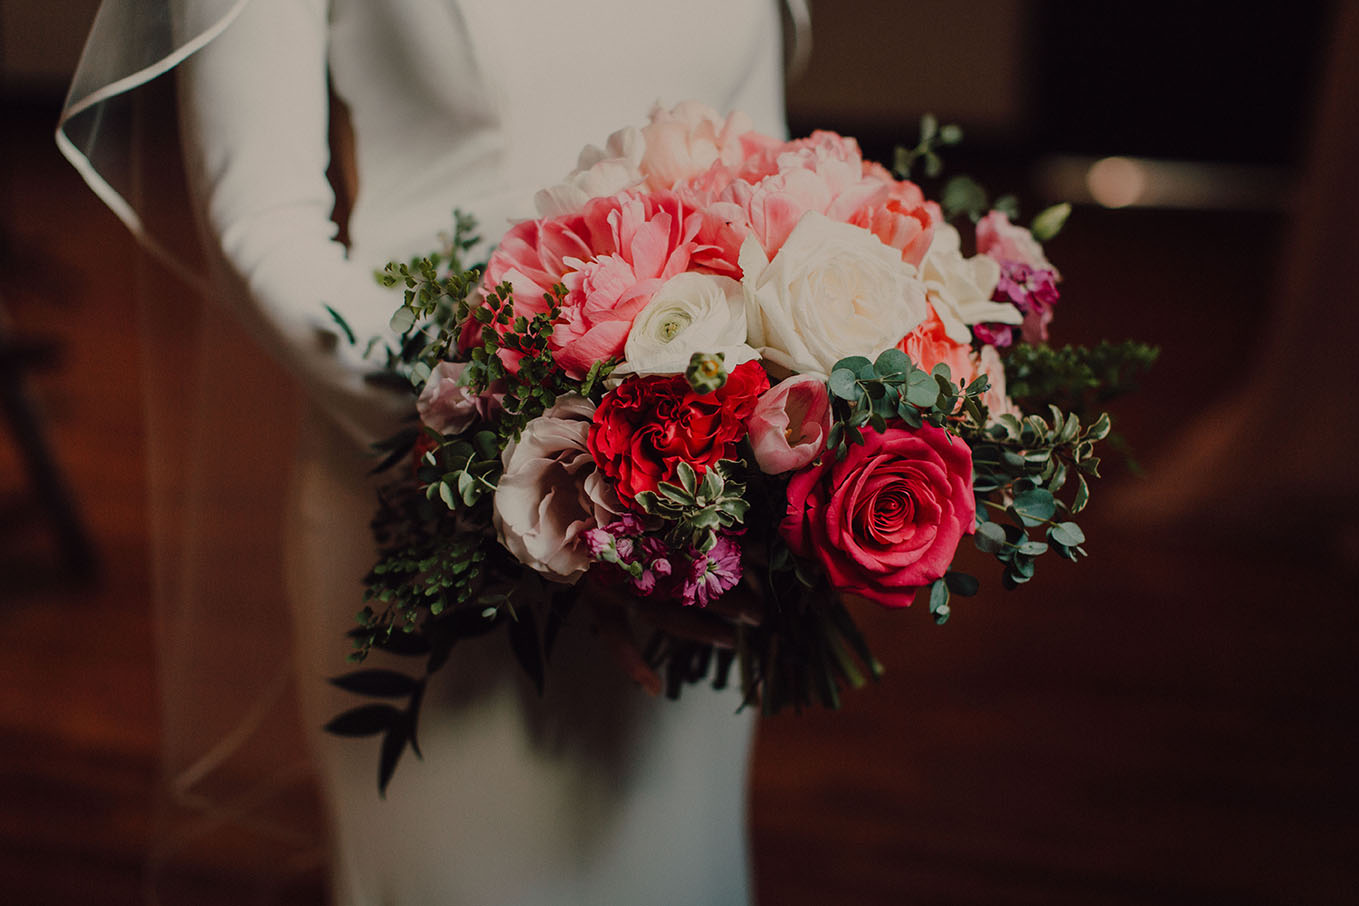 Warm Romantic Bridal Bouquet